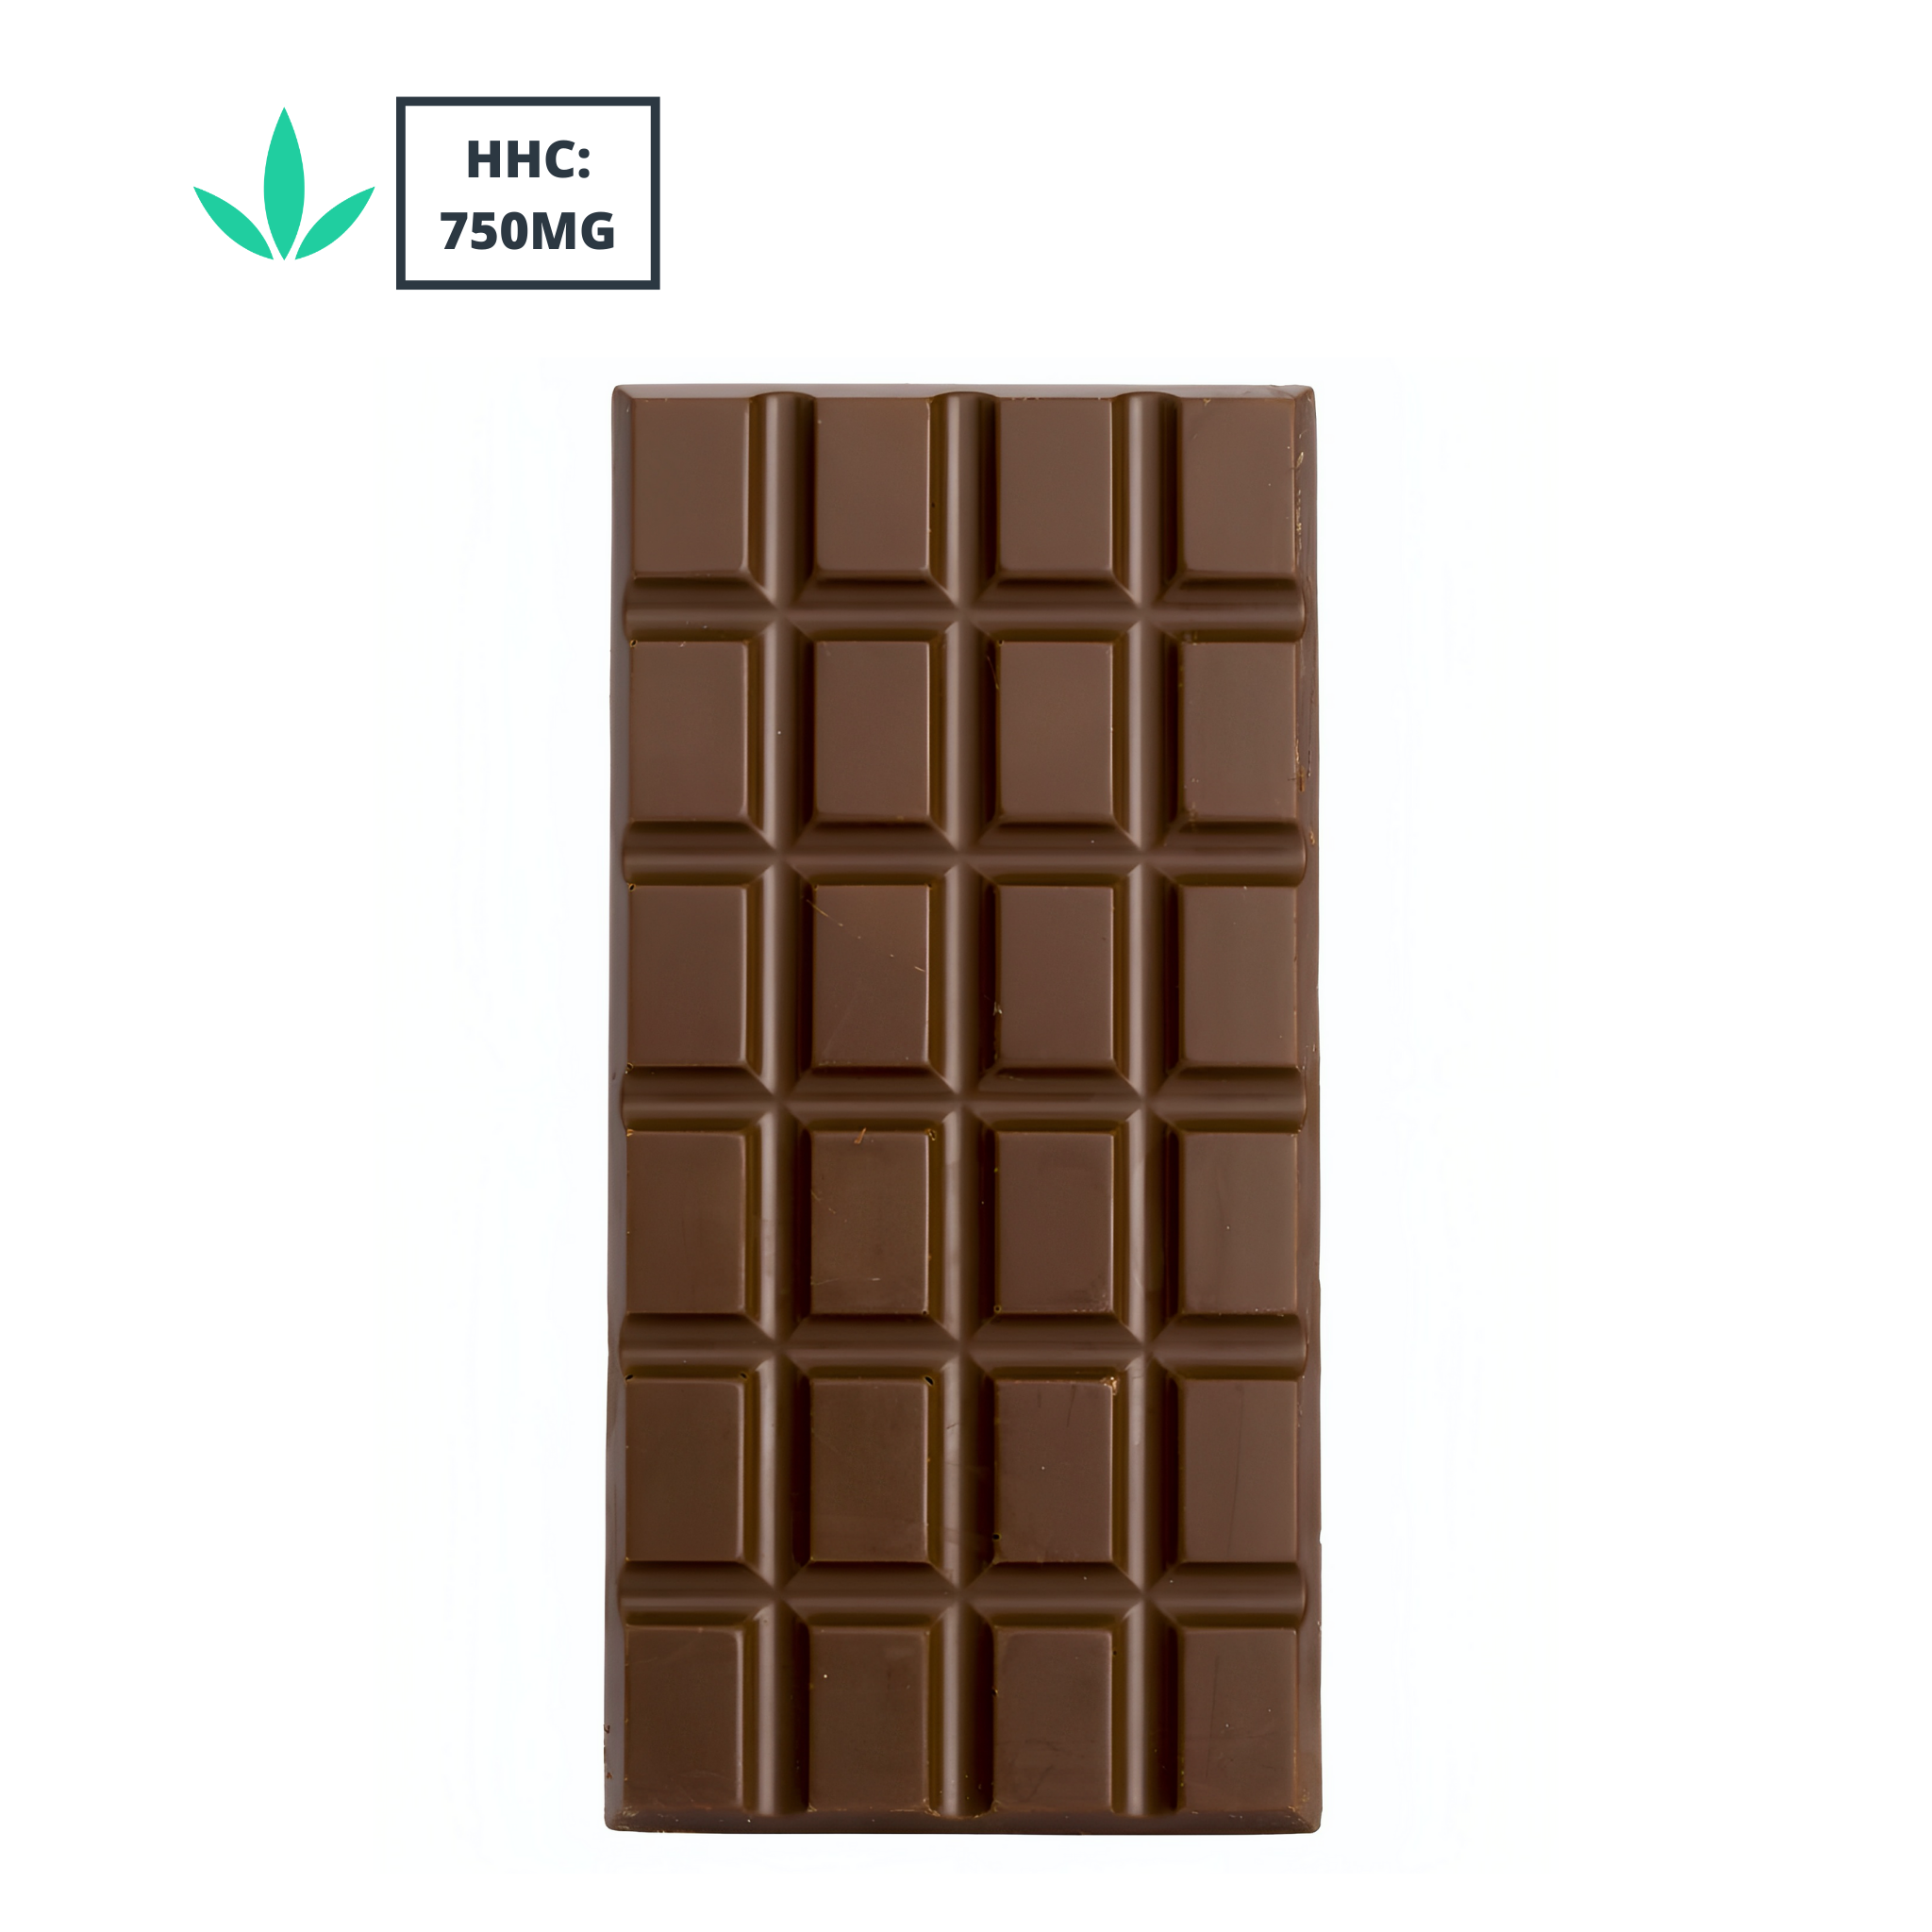 HHC - Chocolate Bar